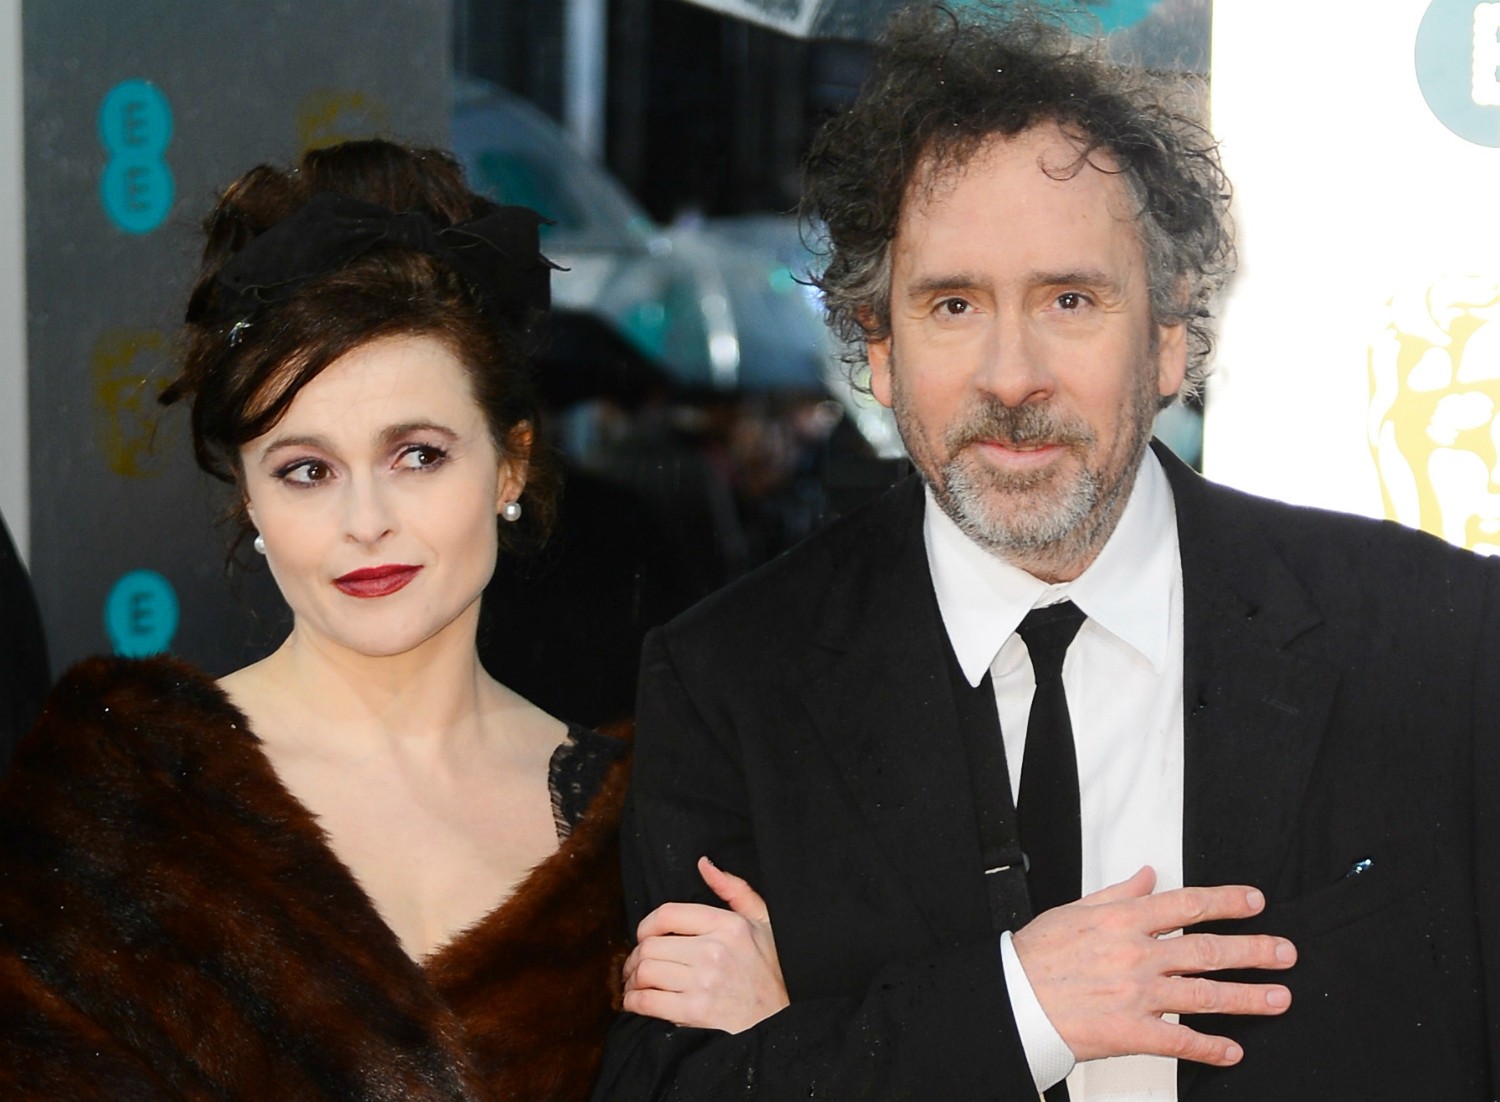 Também estão namorando desde 2001 a atriz inglesa Helena Bonham Carter e o cineasta norte-americano Tim Burton. Eles moram juntos, tiveram dois filhos, mas não subiram ao altar. (Foto: Getty Images)